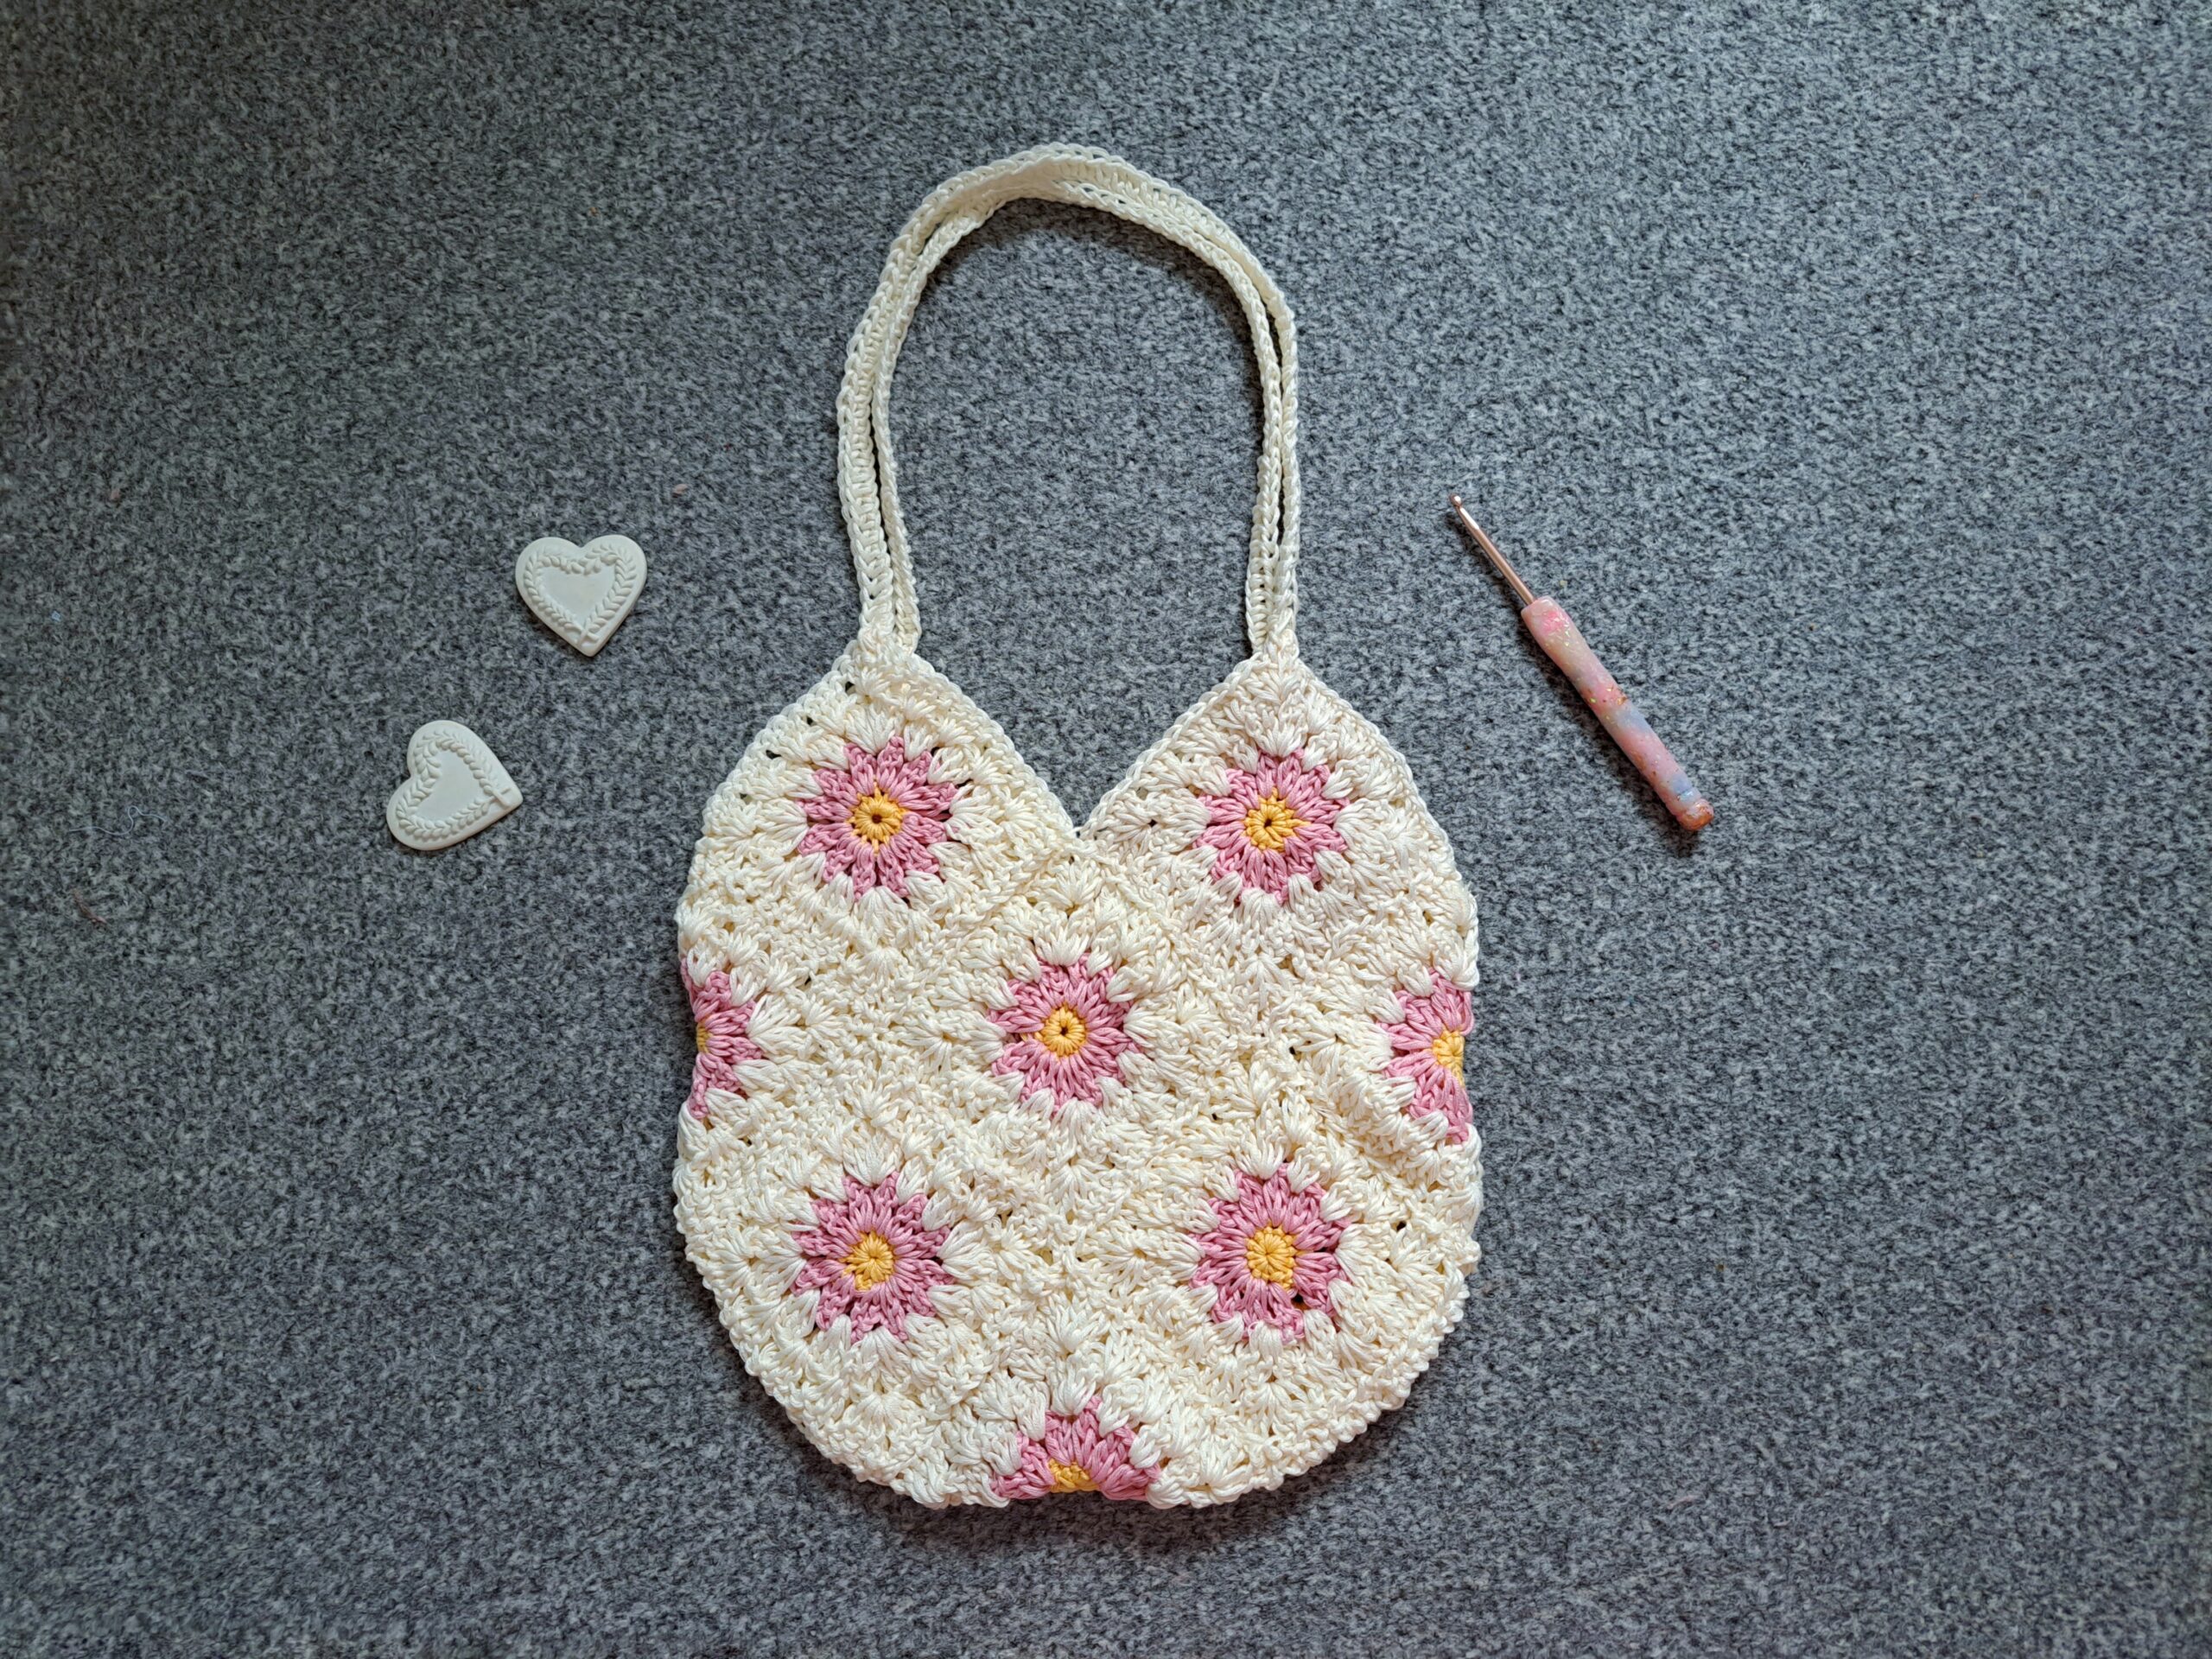 Beginner Crochet Tote Bag - Free Modern Pattern for Spring + Summer